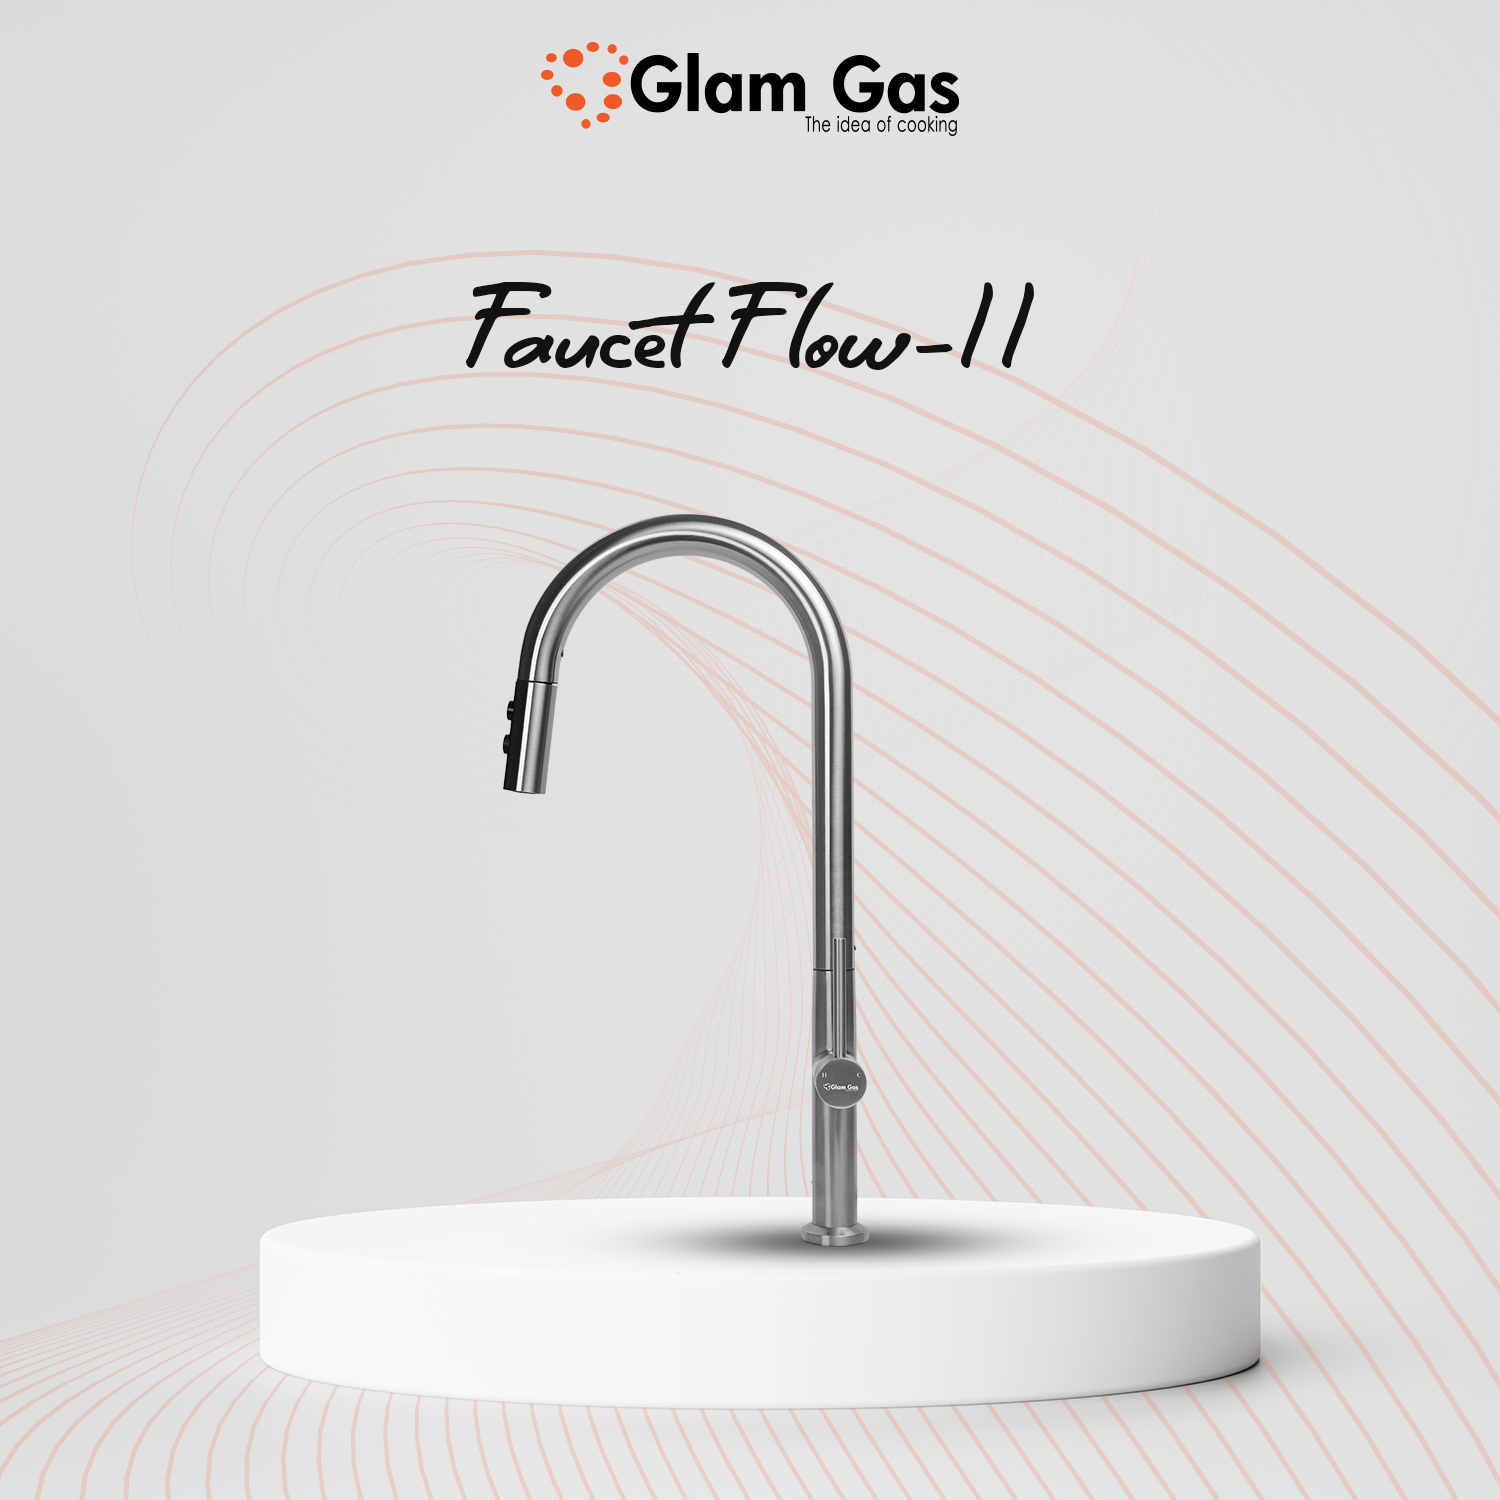 Faucet Flow-11